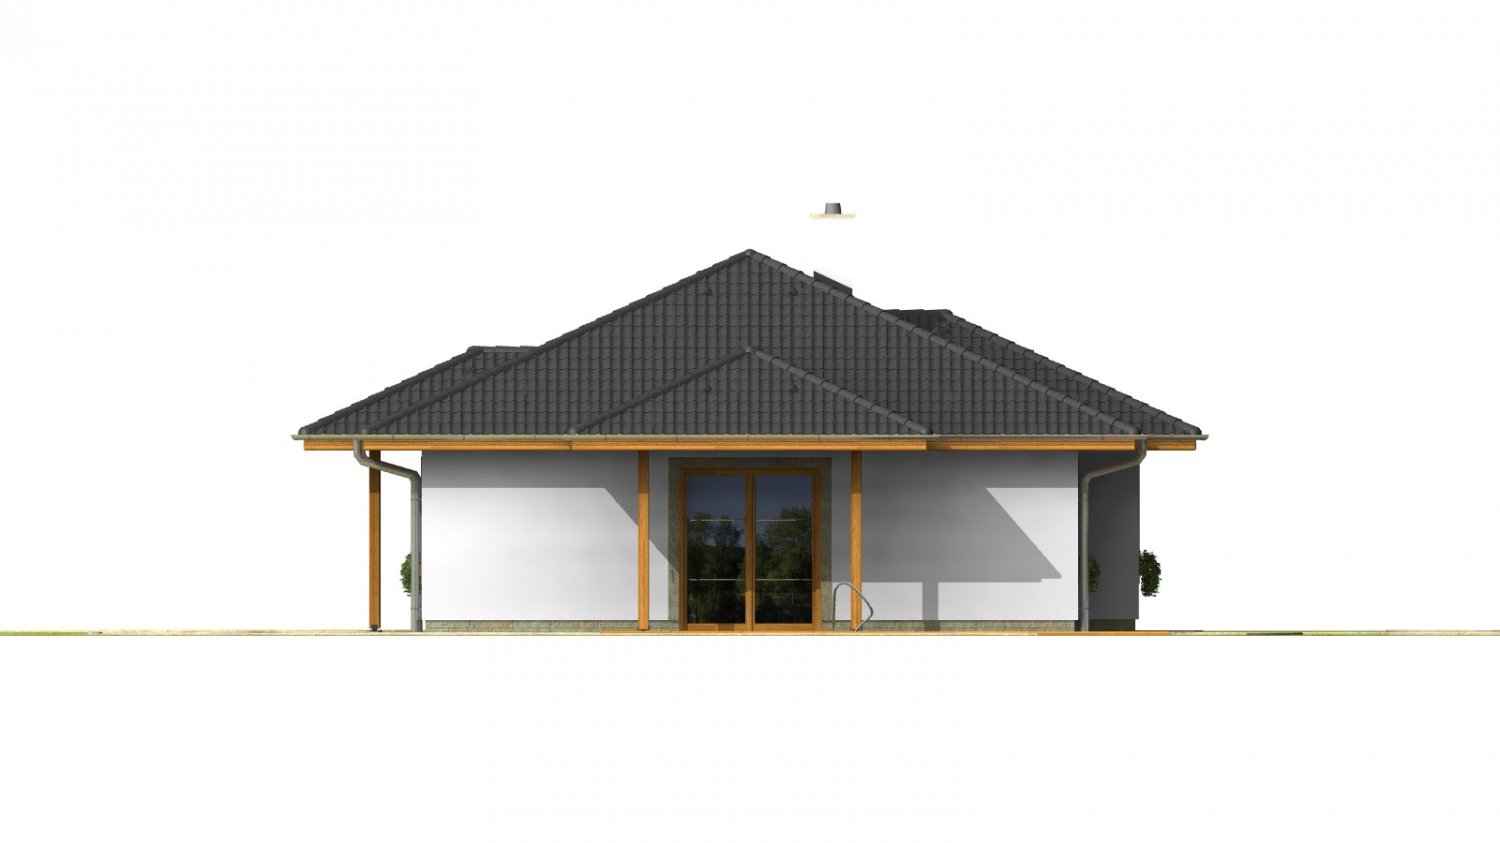 Pohľad 2. - Klasický projekt přízemního rodinného domu s valbovými střechami, vhodný i na užší pozemek.